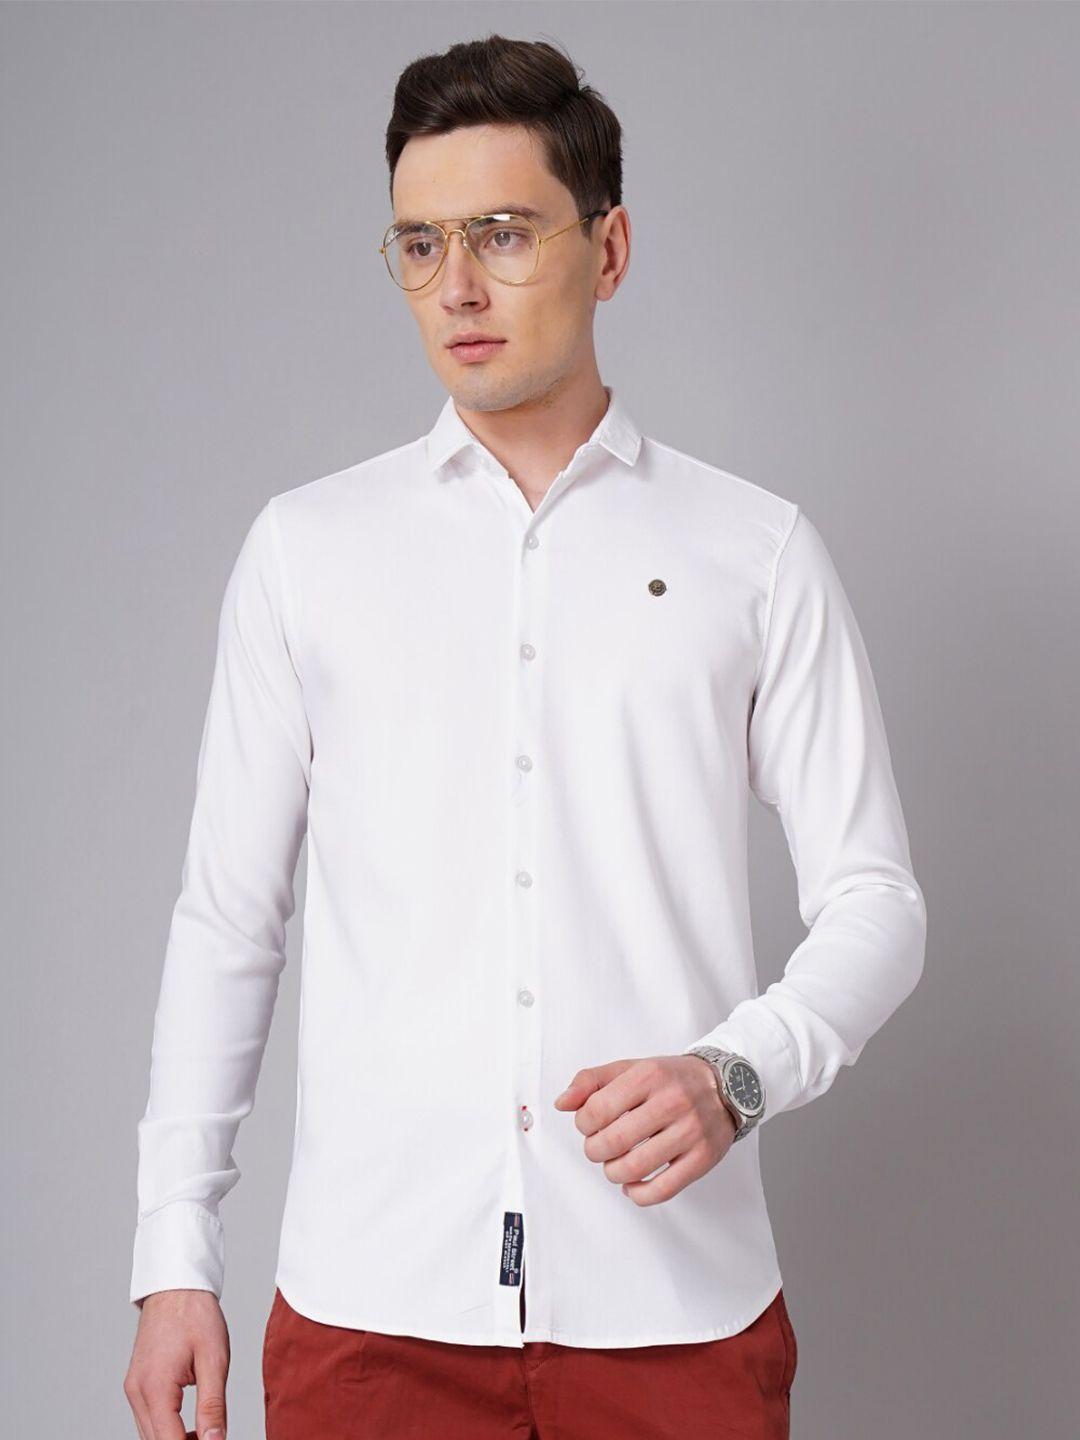 paul-street-standard-slim-fit-long-sleeves-casual-shirt